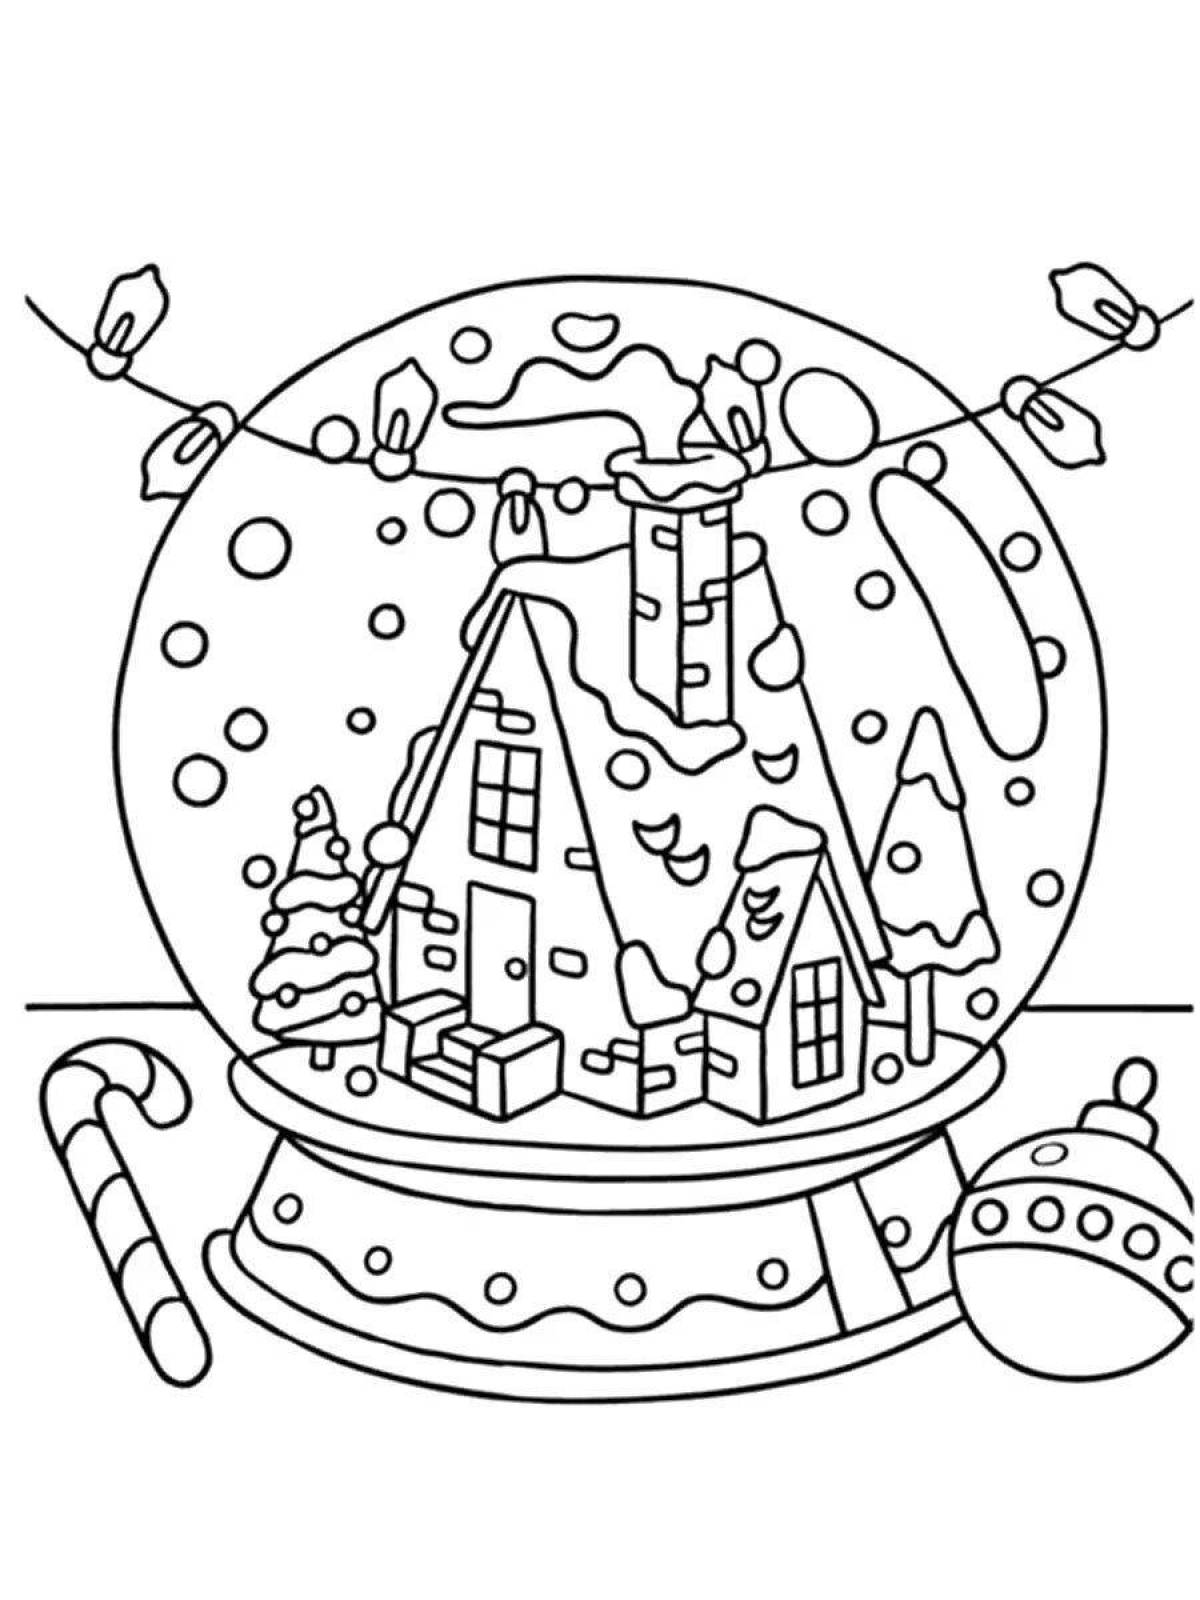 Coloring page joyful christmas glass ball